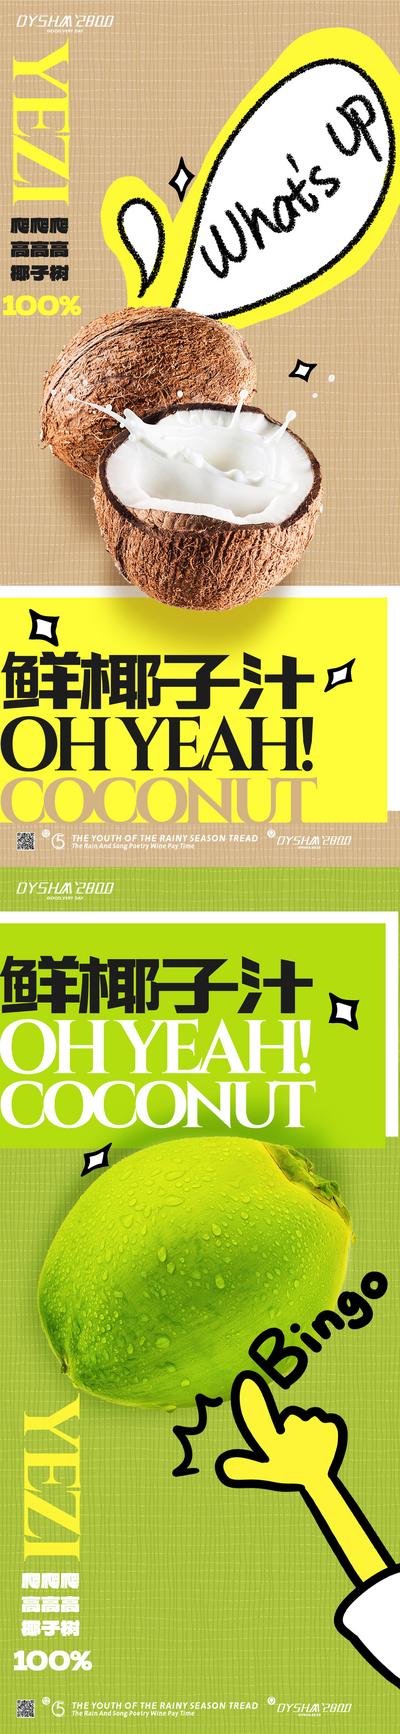 南门网 广告 海报 美食 椰子汁 饮品 餐饮 奶茶 饮料 水果 果茶 系列